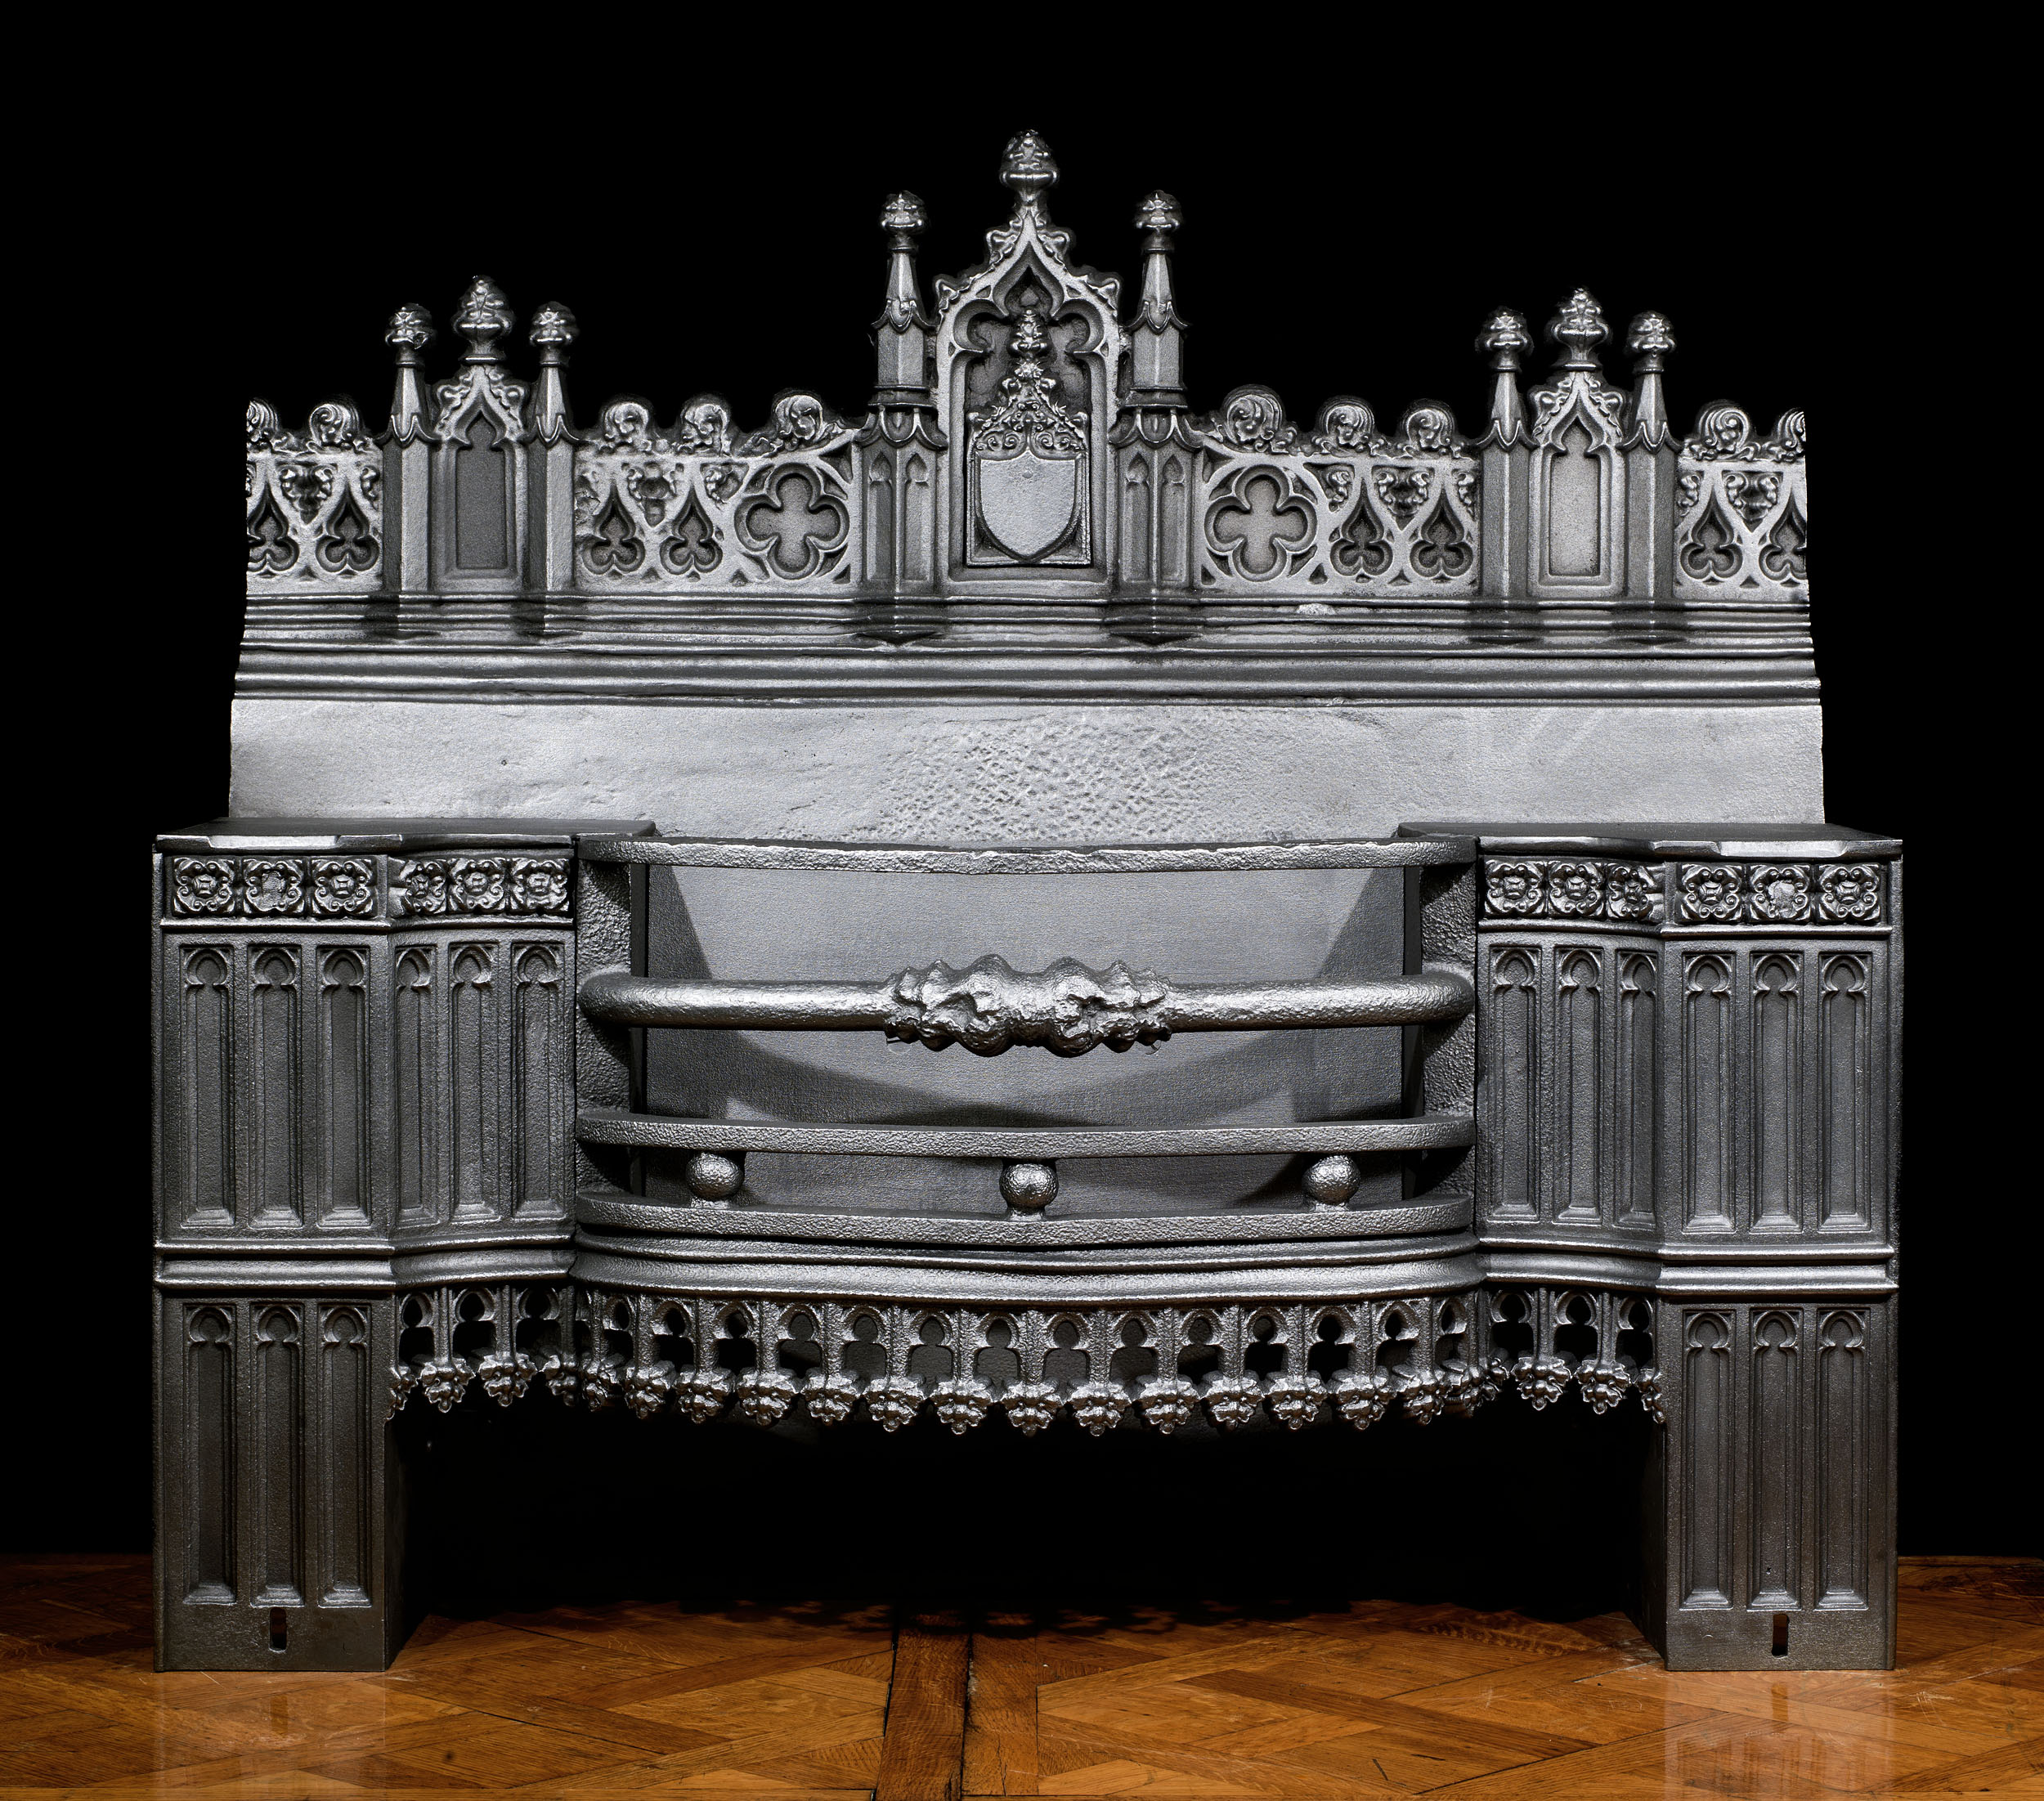 A grand antique cast iron Gothic Hob Grate